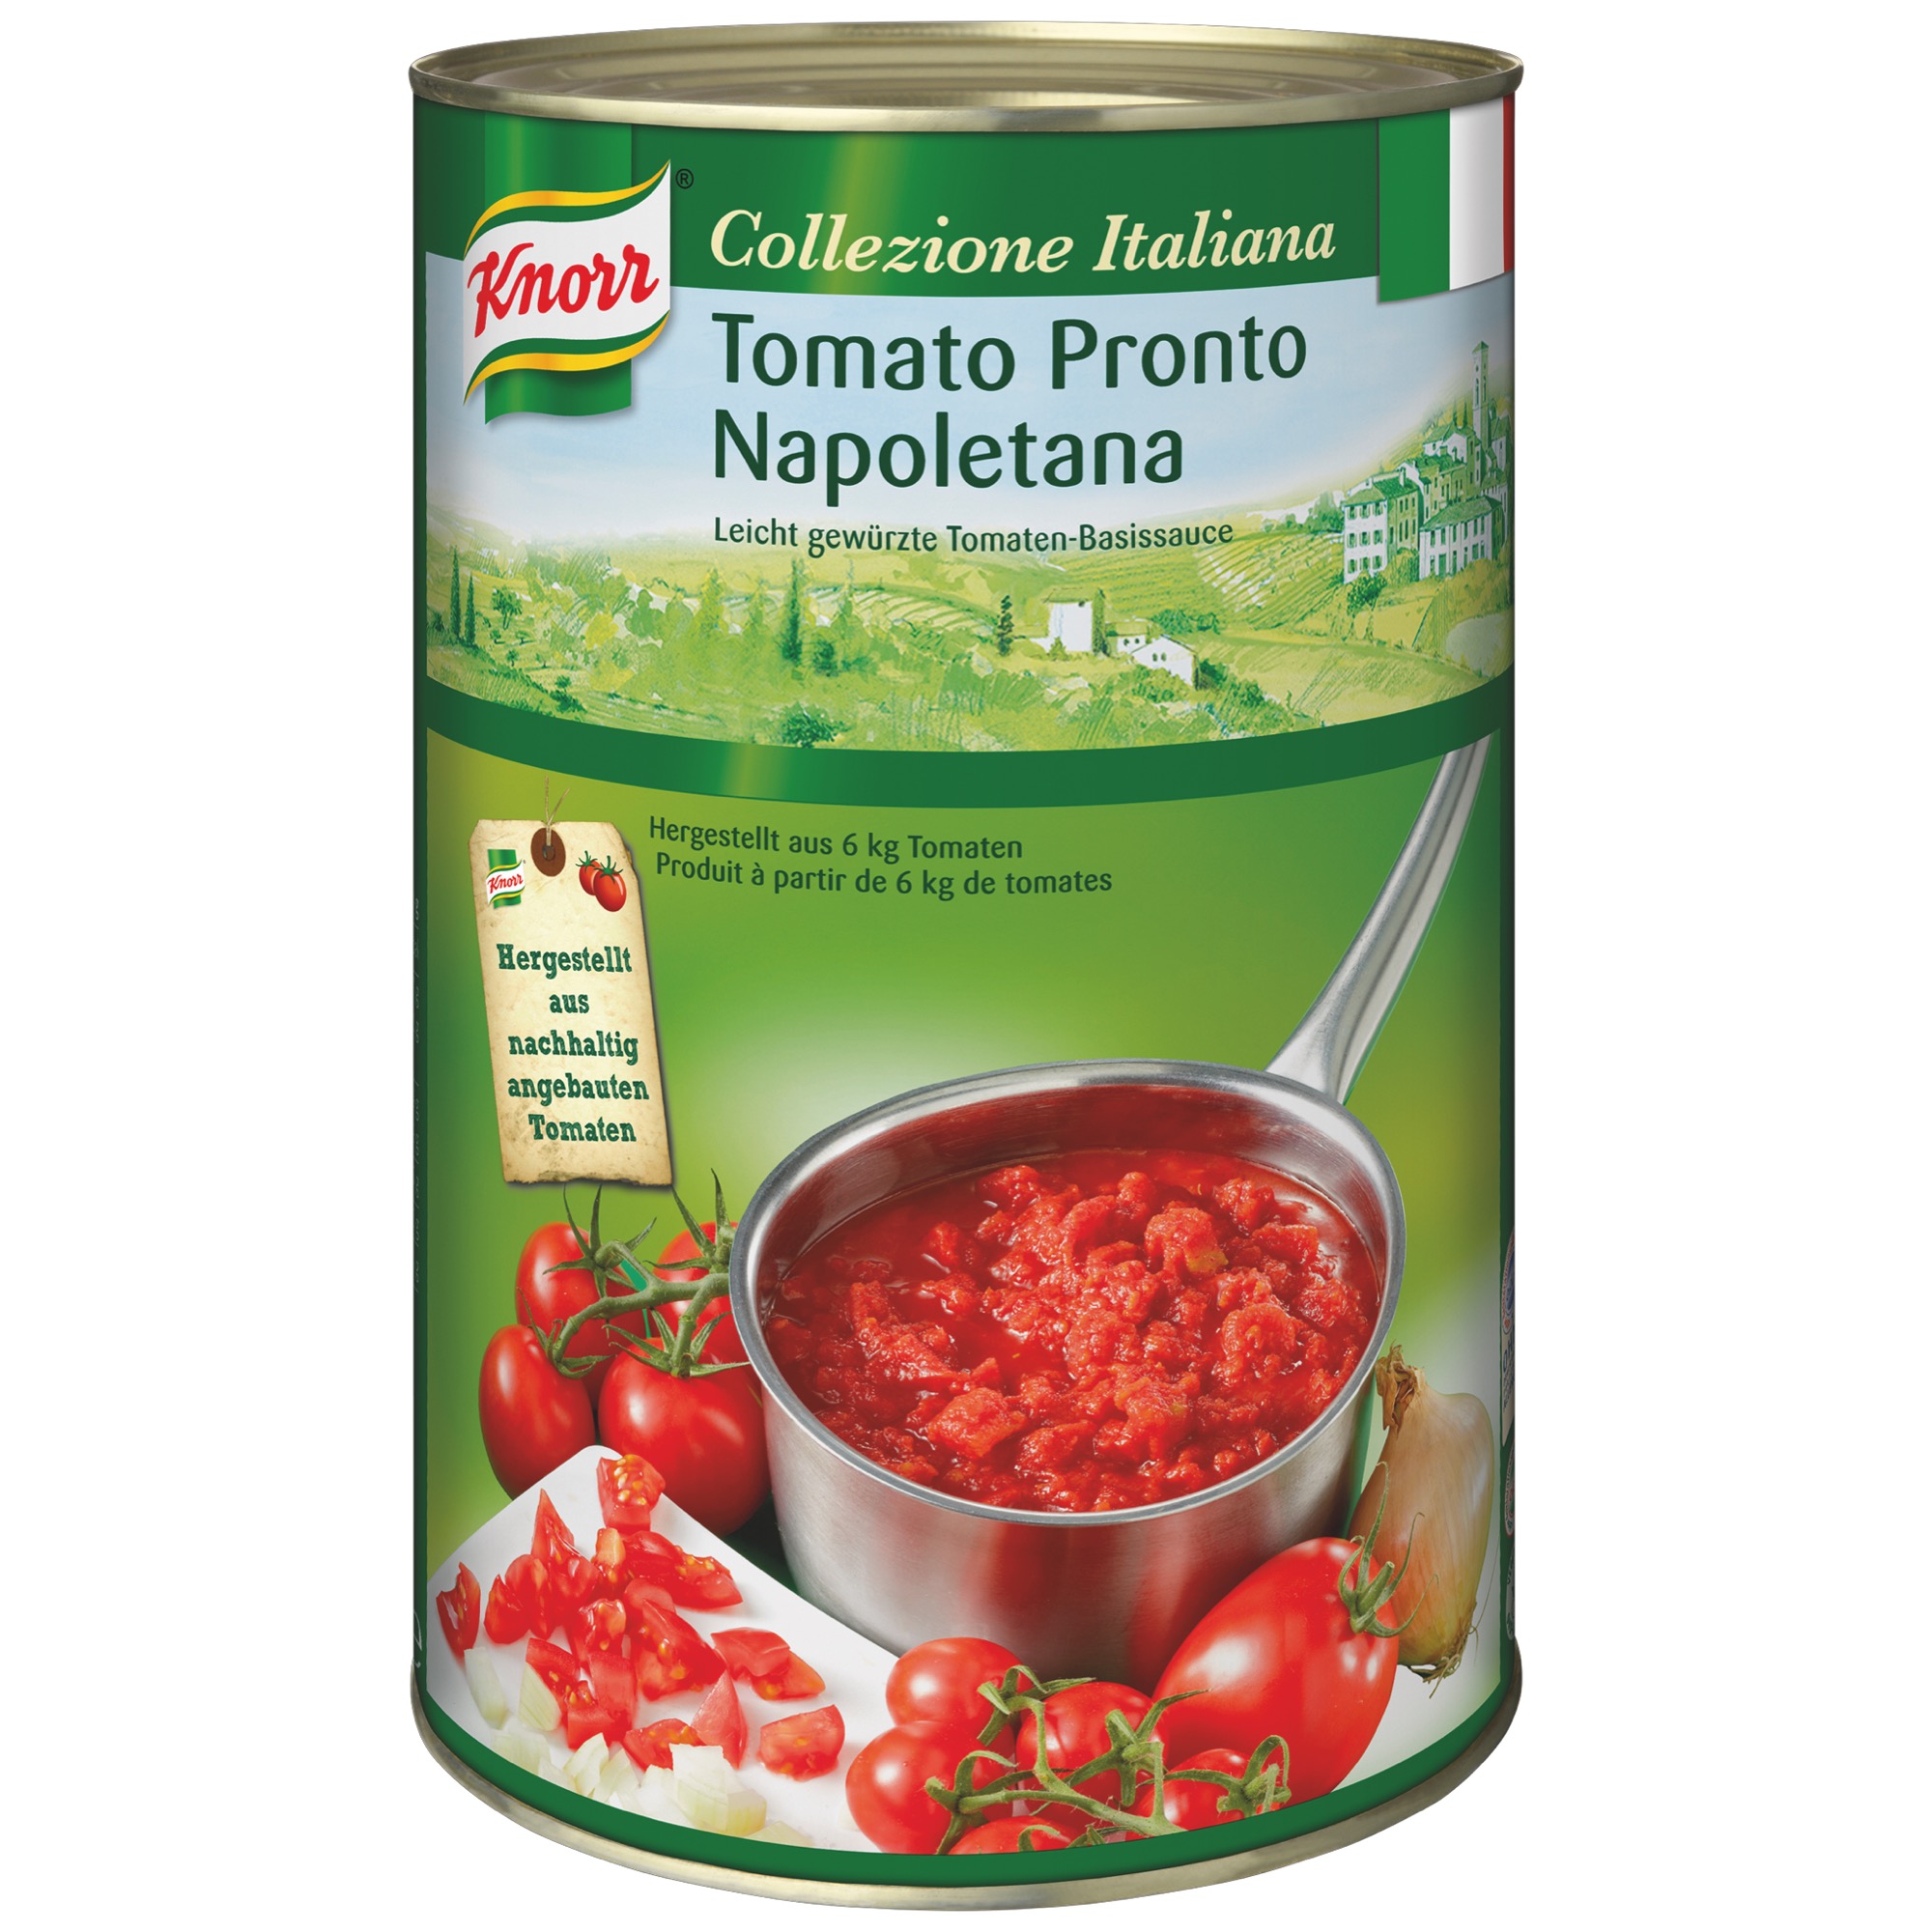 Knorr Tomato Pronto Napoletana 4,15kg